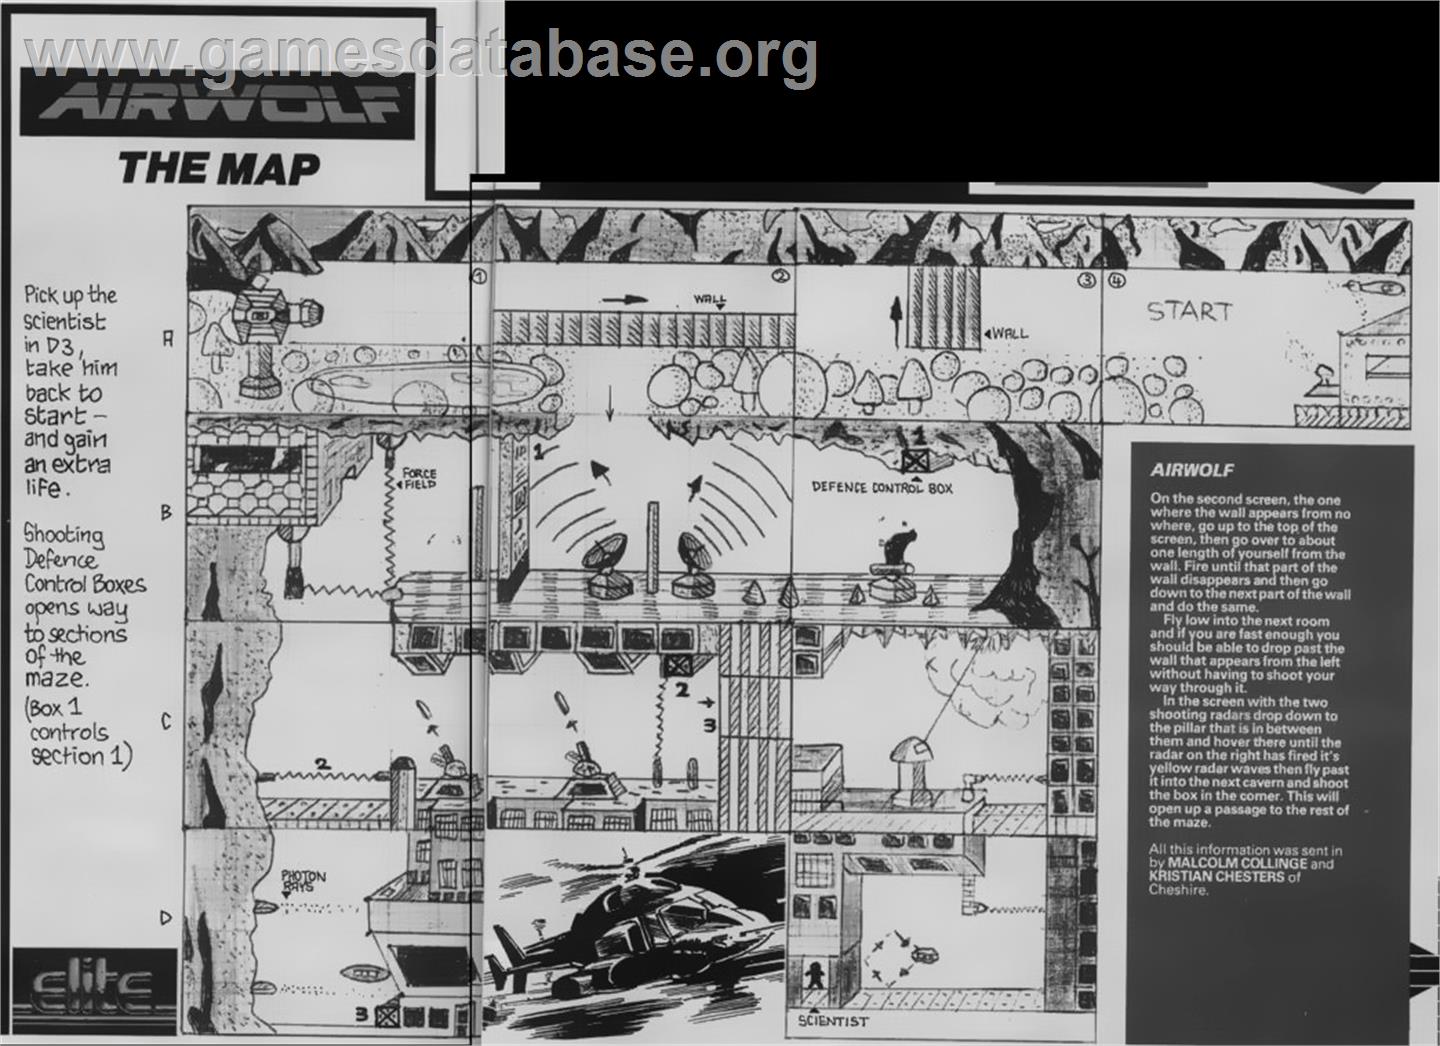 Airwolf - Arcade - Artwork - Map